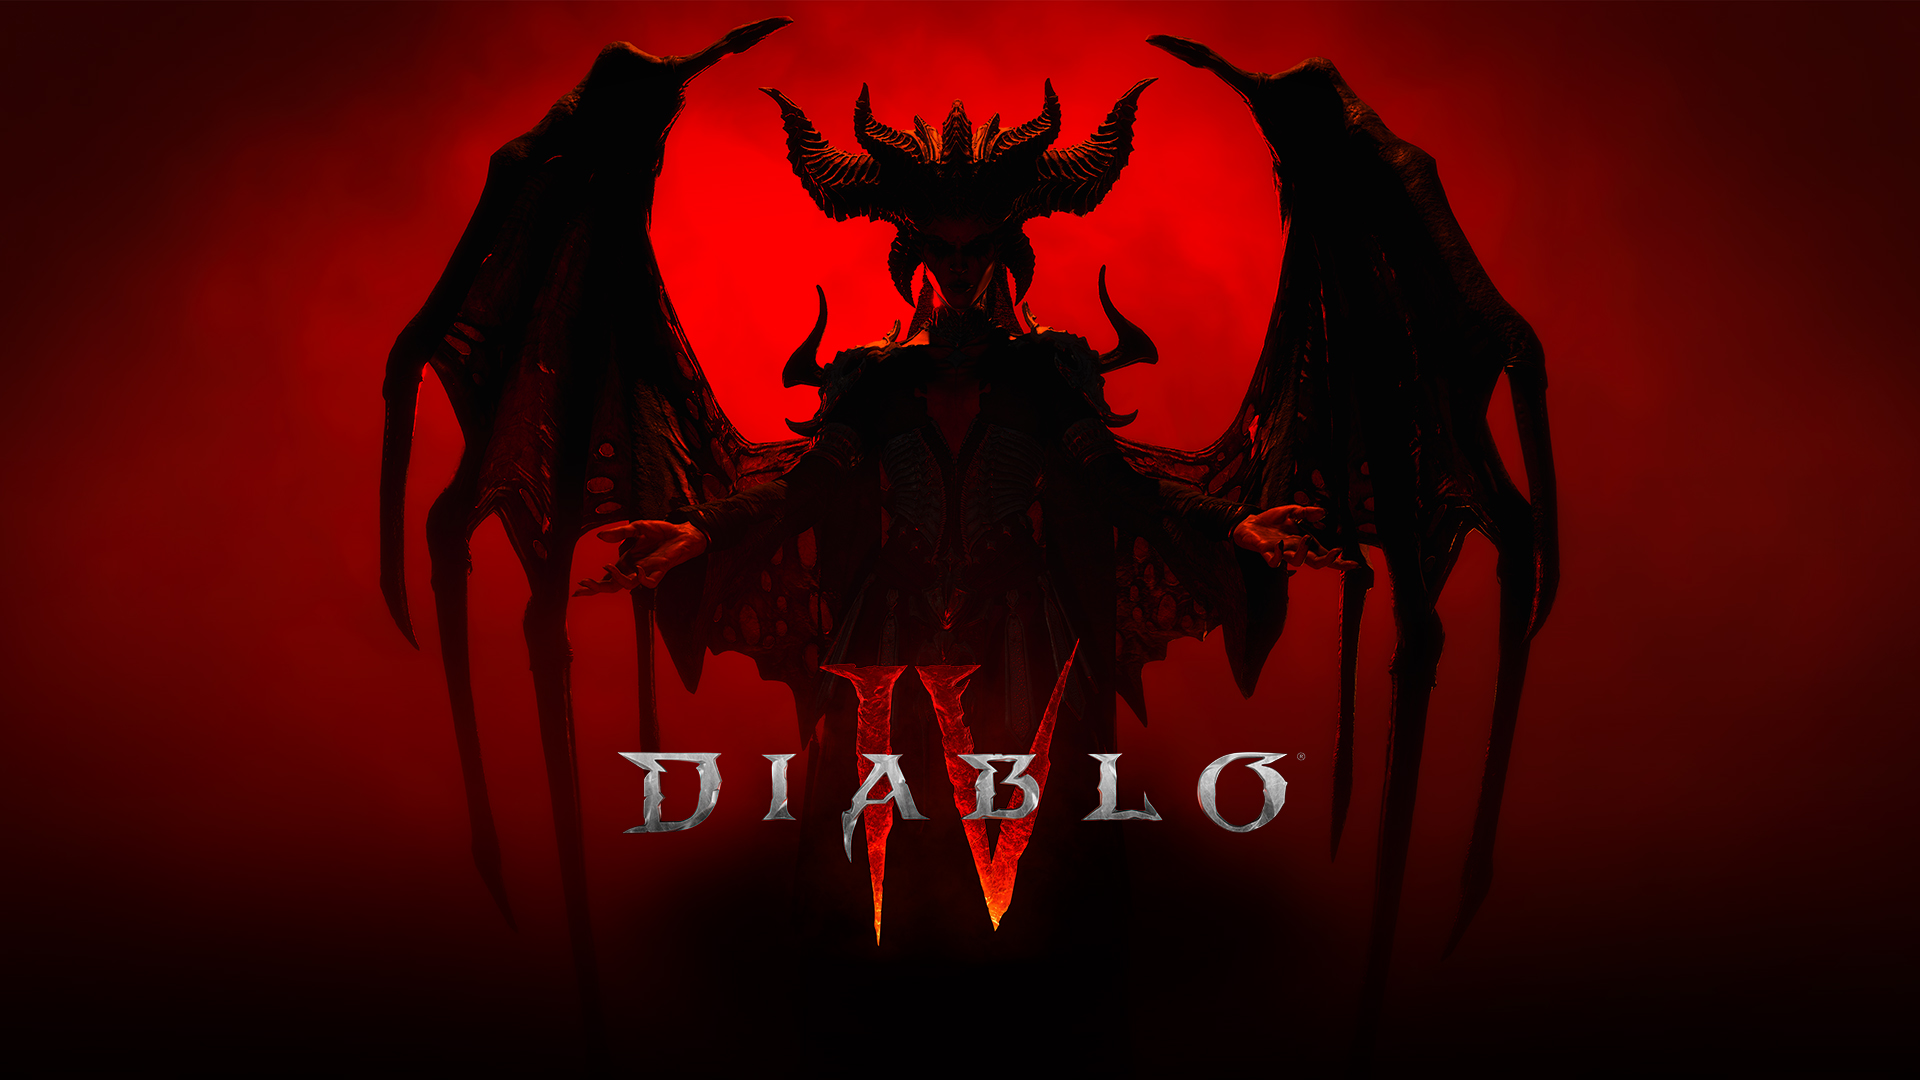 Diablo IV art